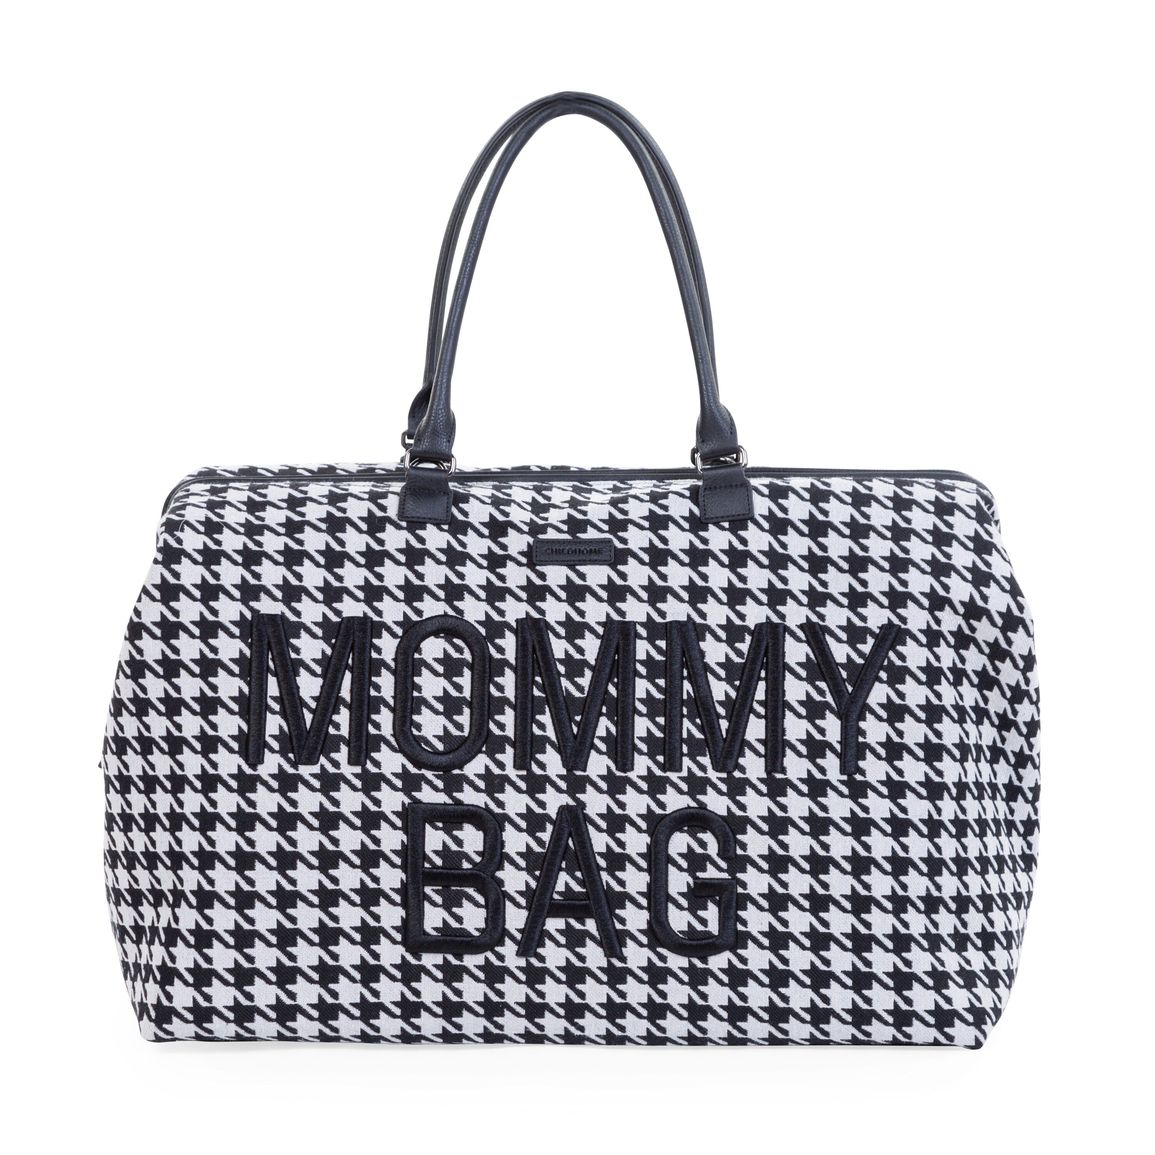 Prebaľovacia taška Mommy Bag Pepito Black